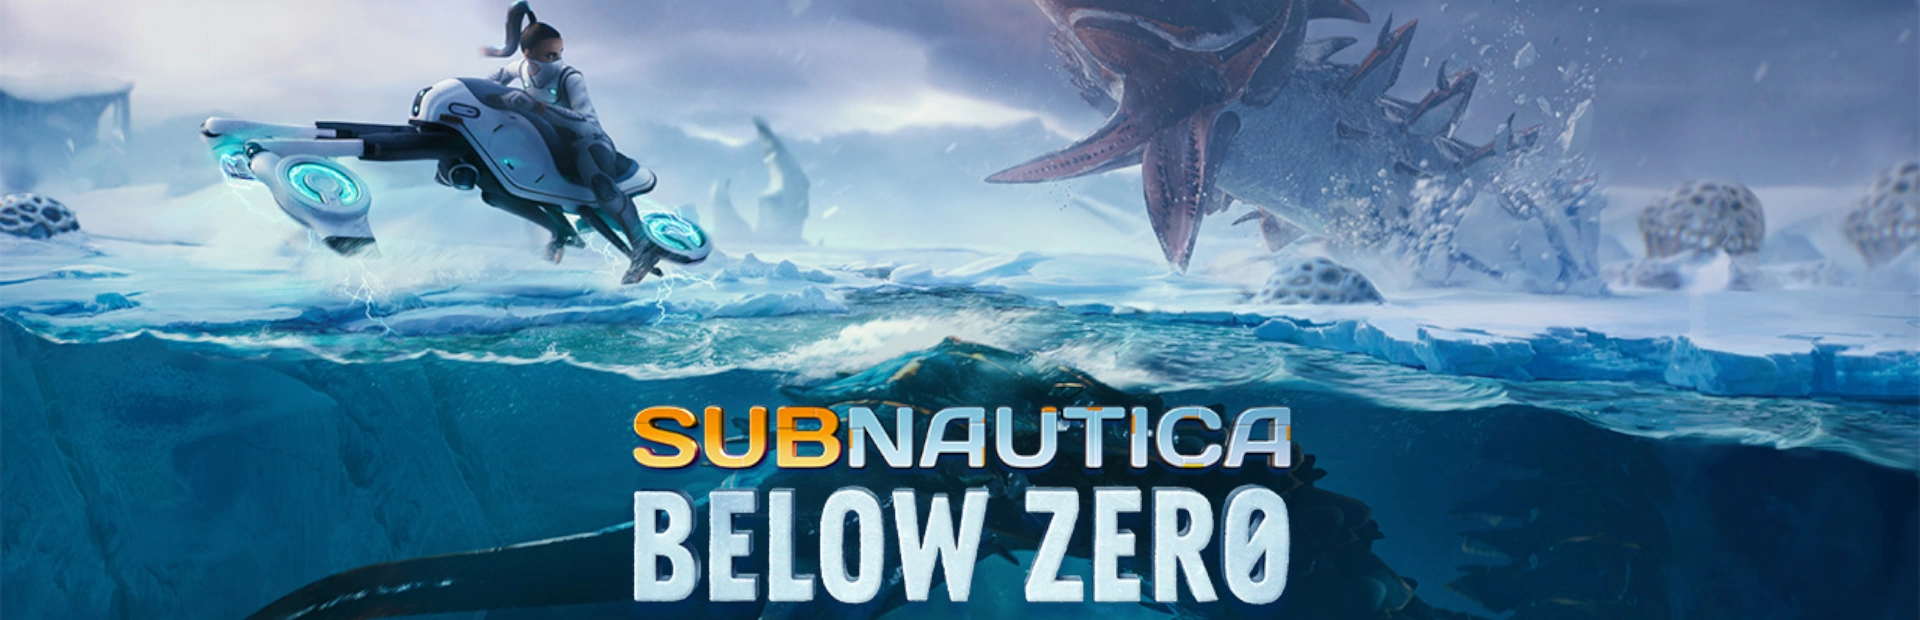 دانلود بازی Subnautica: Below Zero برای کامپیوتر | گیمباتو